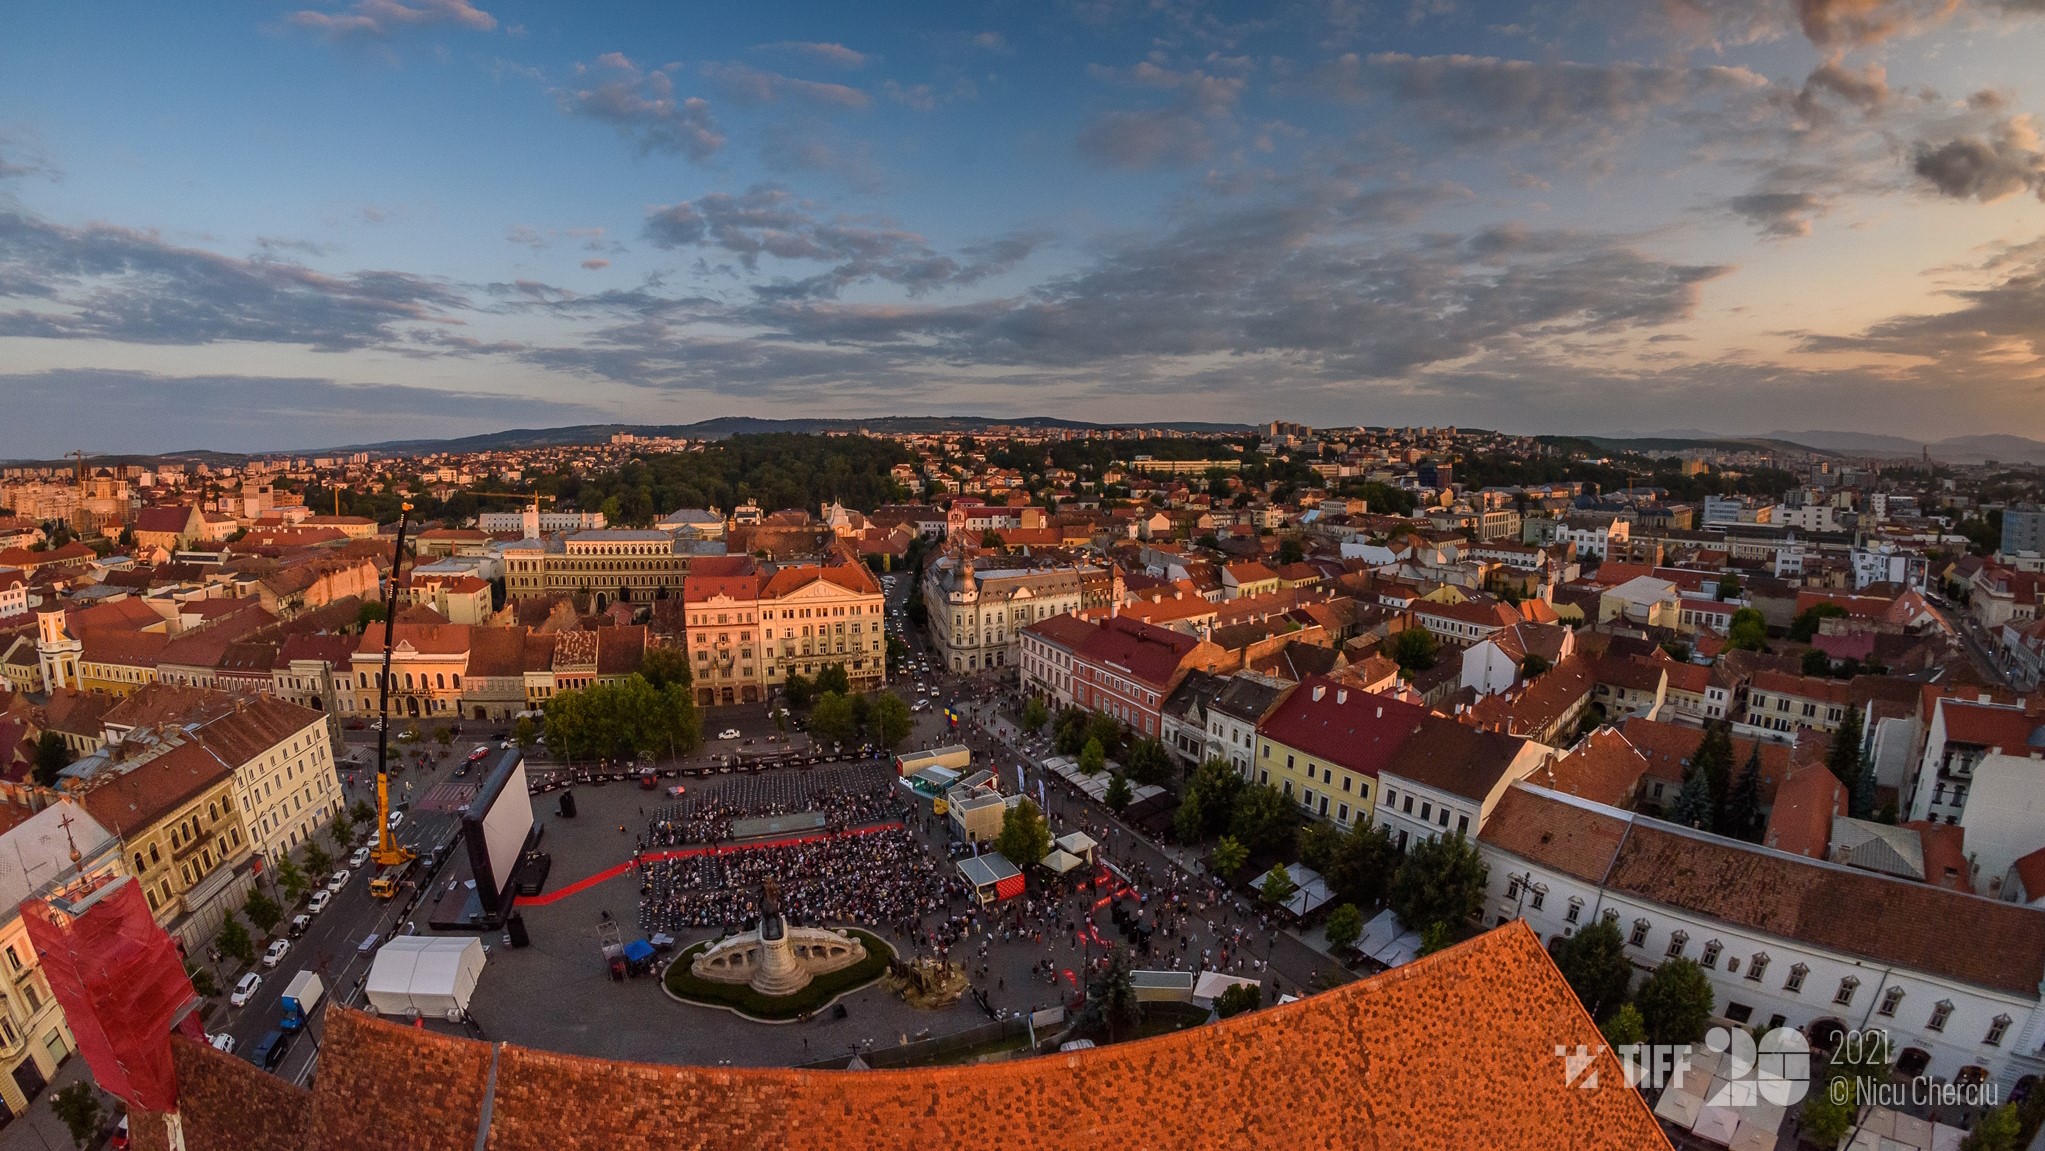 Megkapta az UNESCO City of Film címét, hivatalosan is filmváros lett Kolozsvár